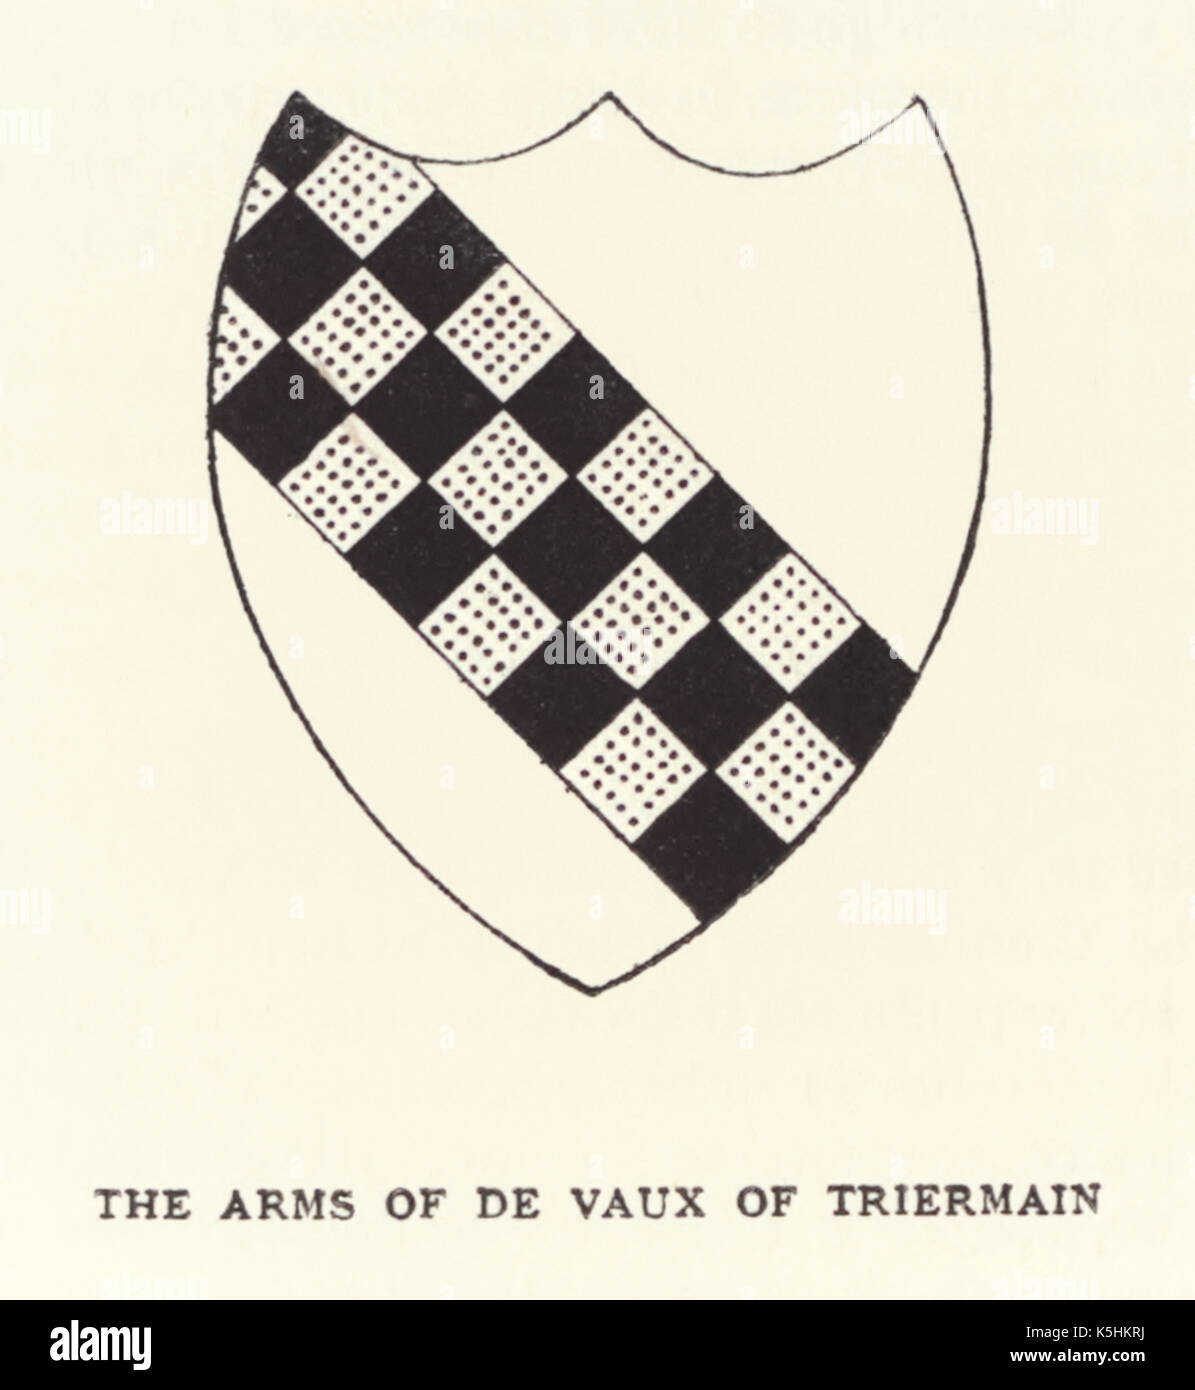 'I bracci di de Vaux di Triermain;' i bracci del XII secolo cavaliere Sir Roland de Vaux chi sfrutta furono celebrati nella poesia, 'nuziale di Triermain" scritto nel 1813 da Sir Walter Scott (1771-1832). Foto Stock